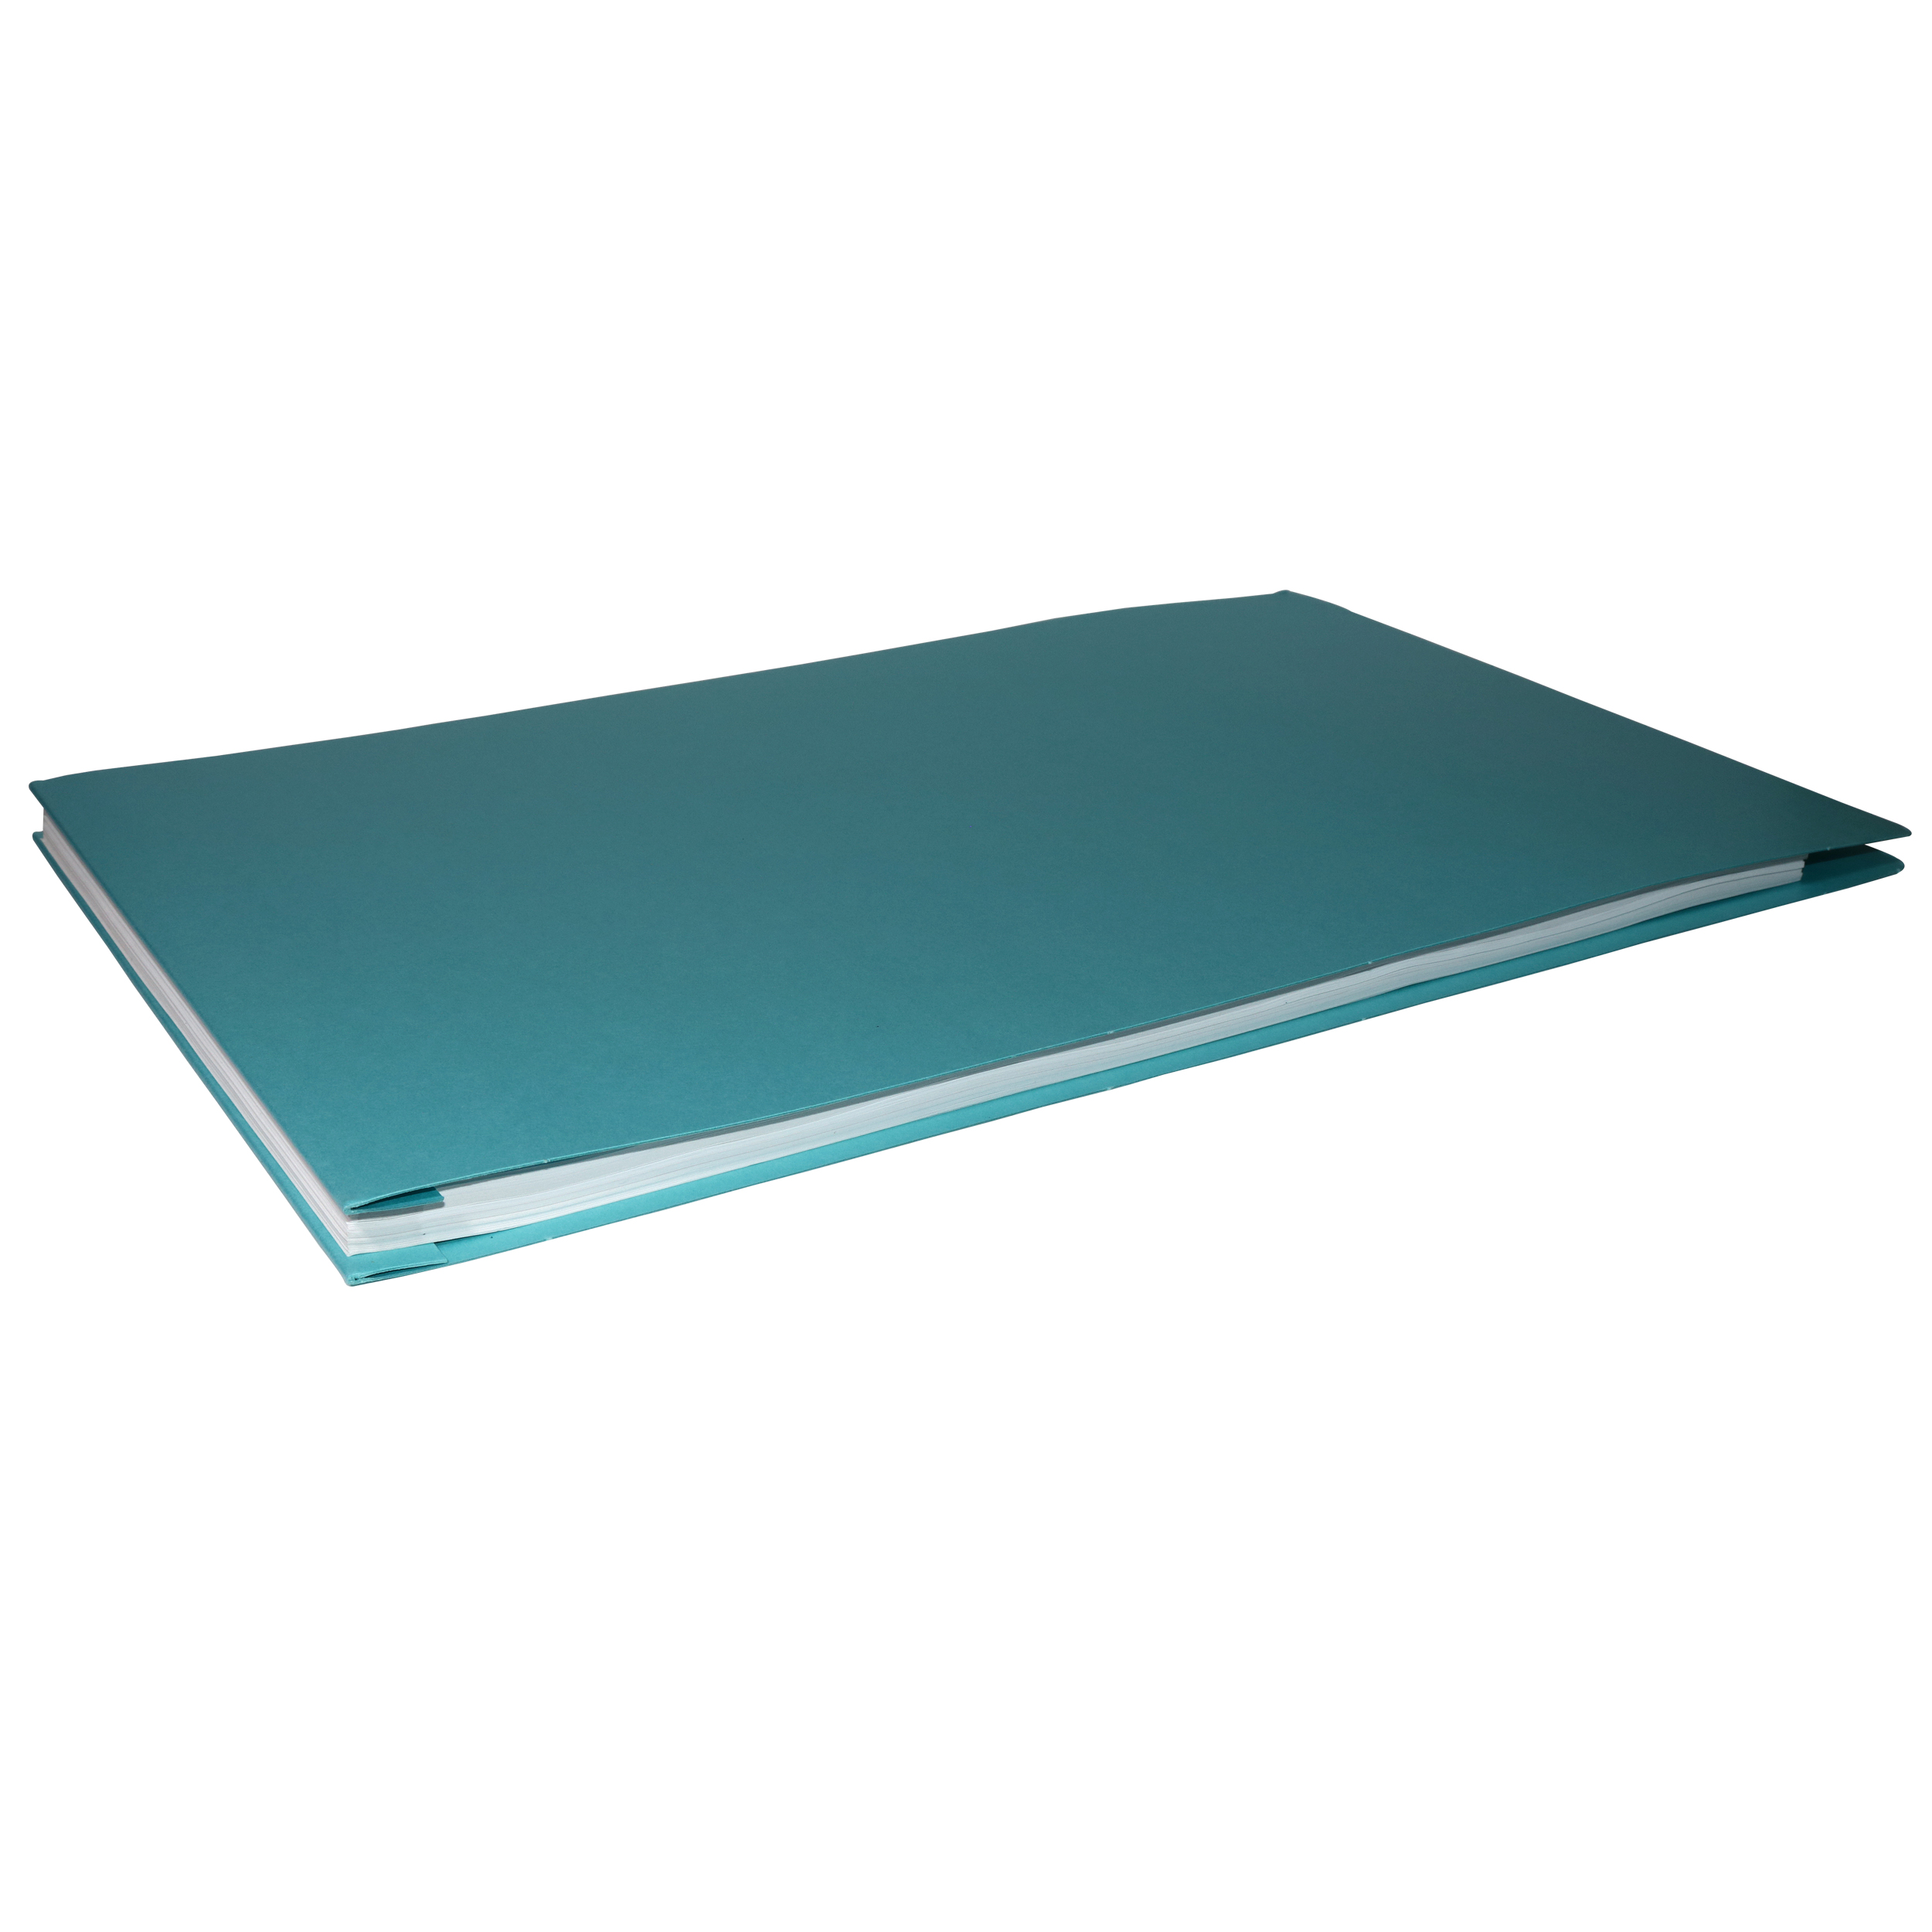  10 Pack Of 11x17 Landscape Pressboard Presentation Binder  Folder, Blue Fiberboard Report Cover